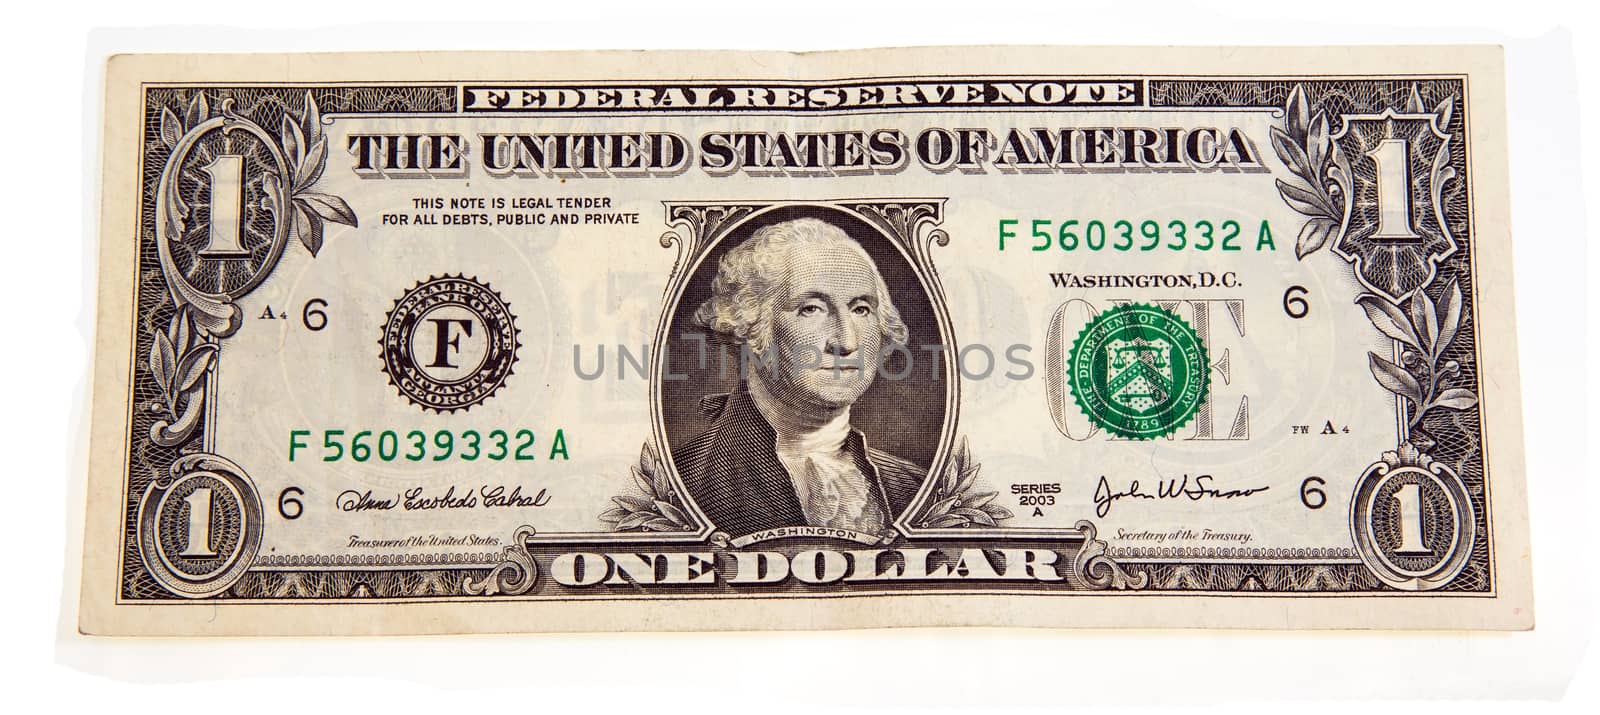 American dollar by avq